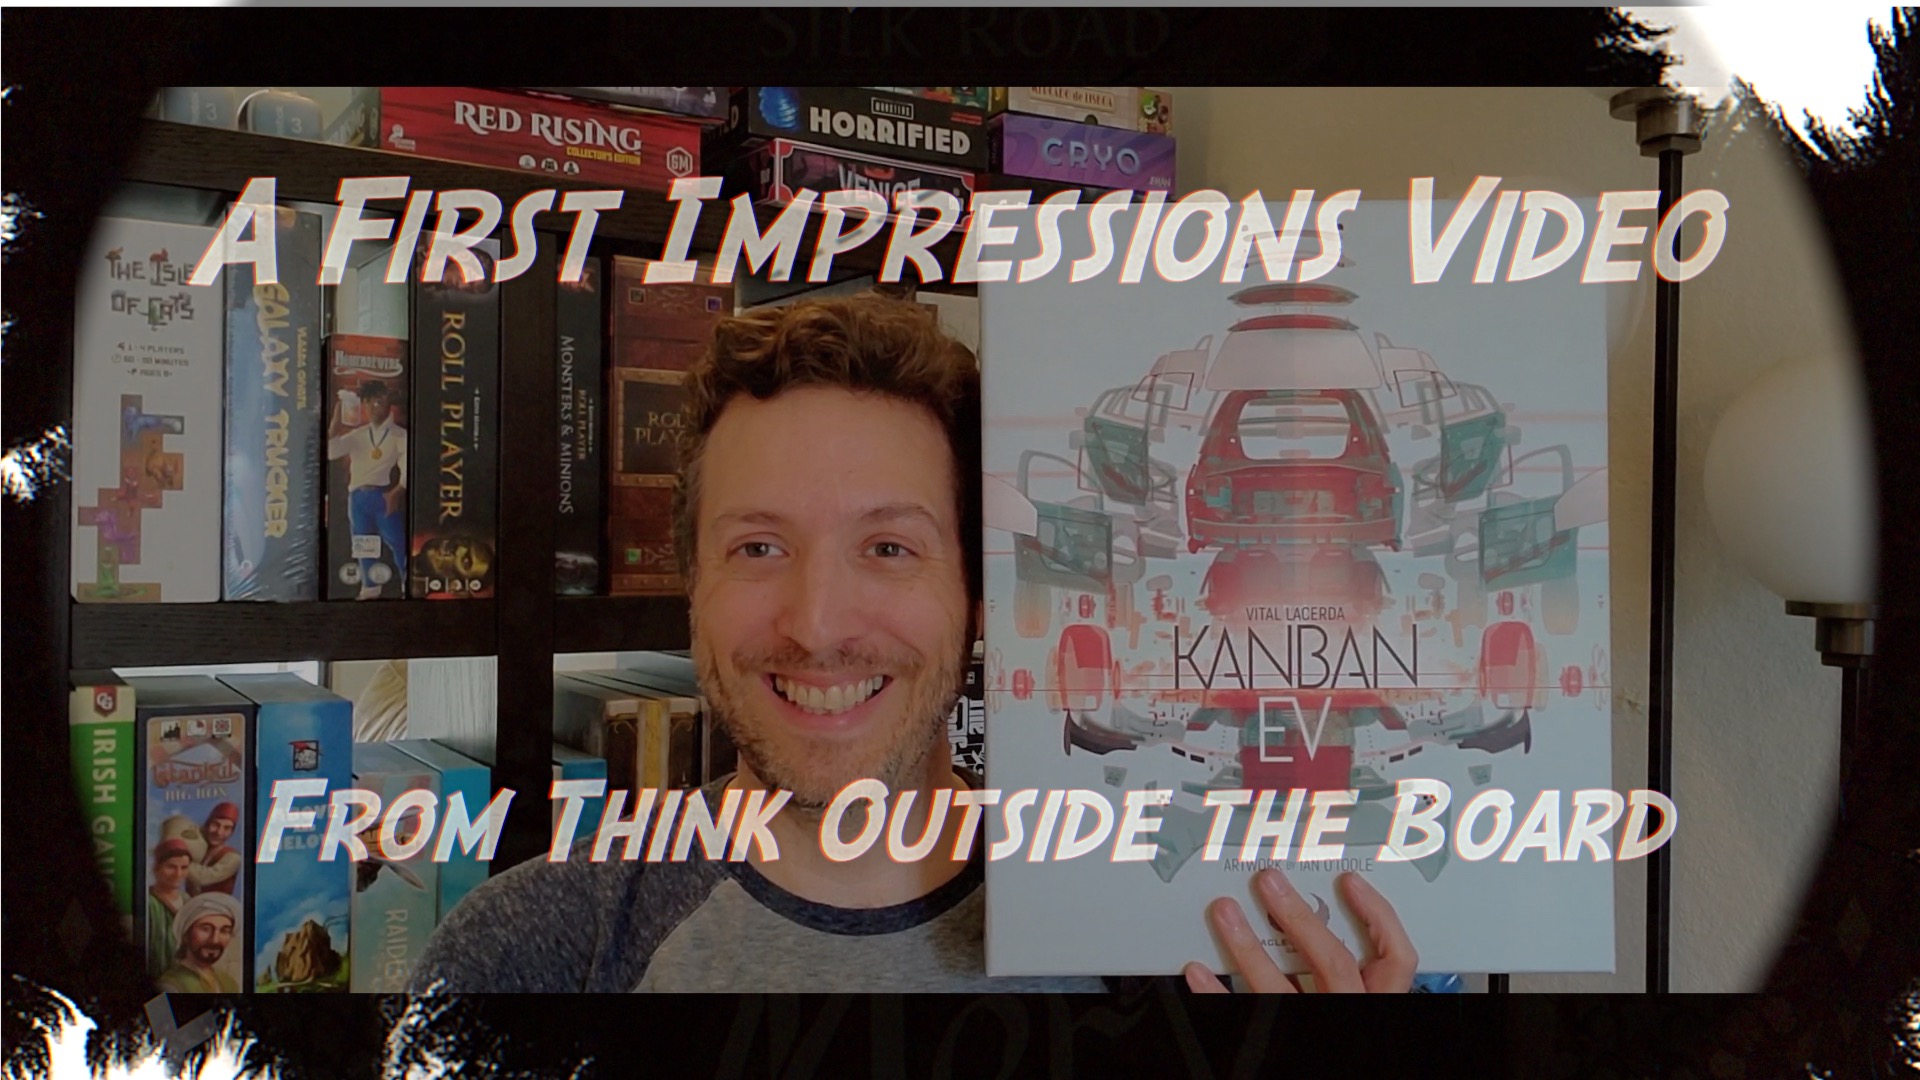 Kanban: EV First Impressions